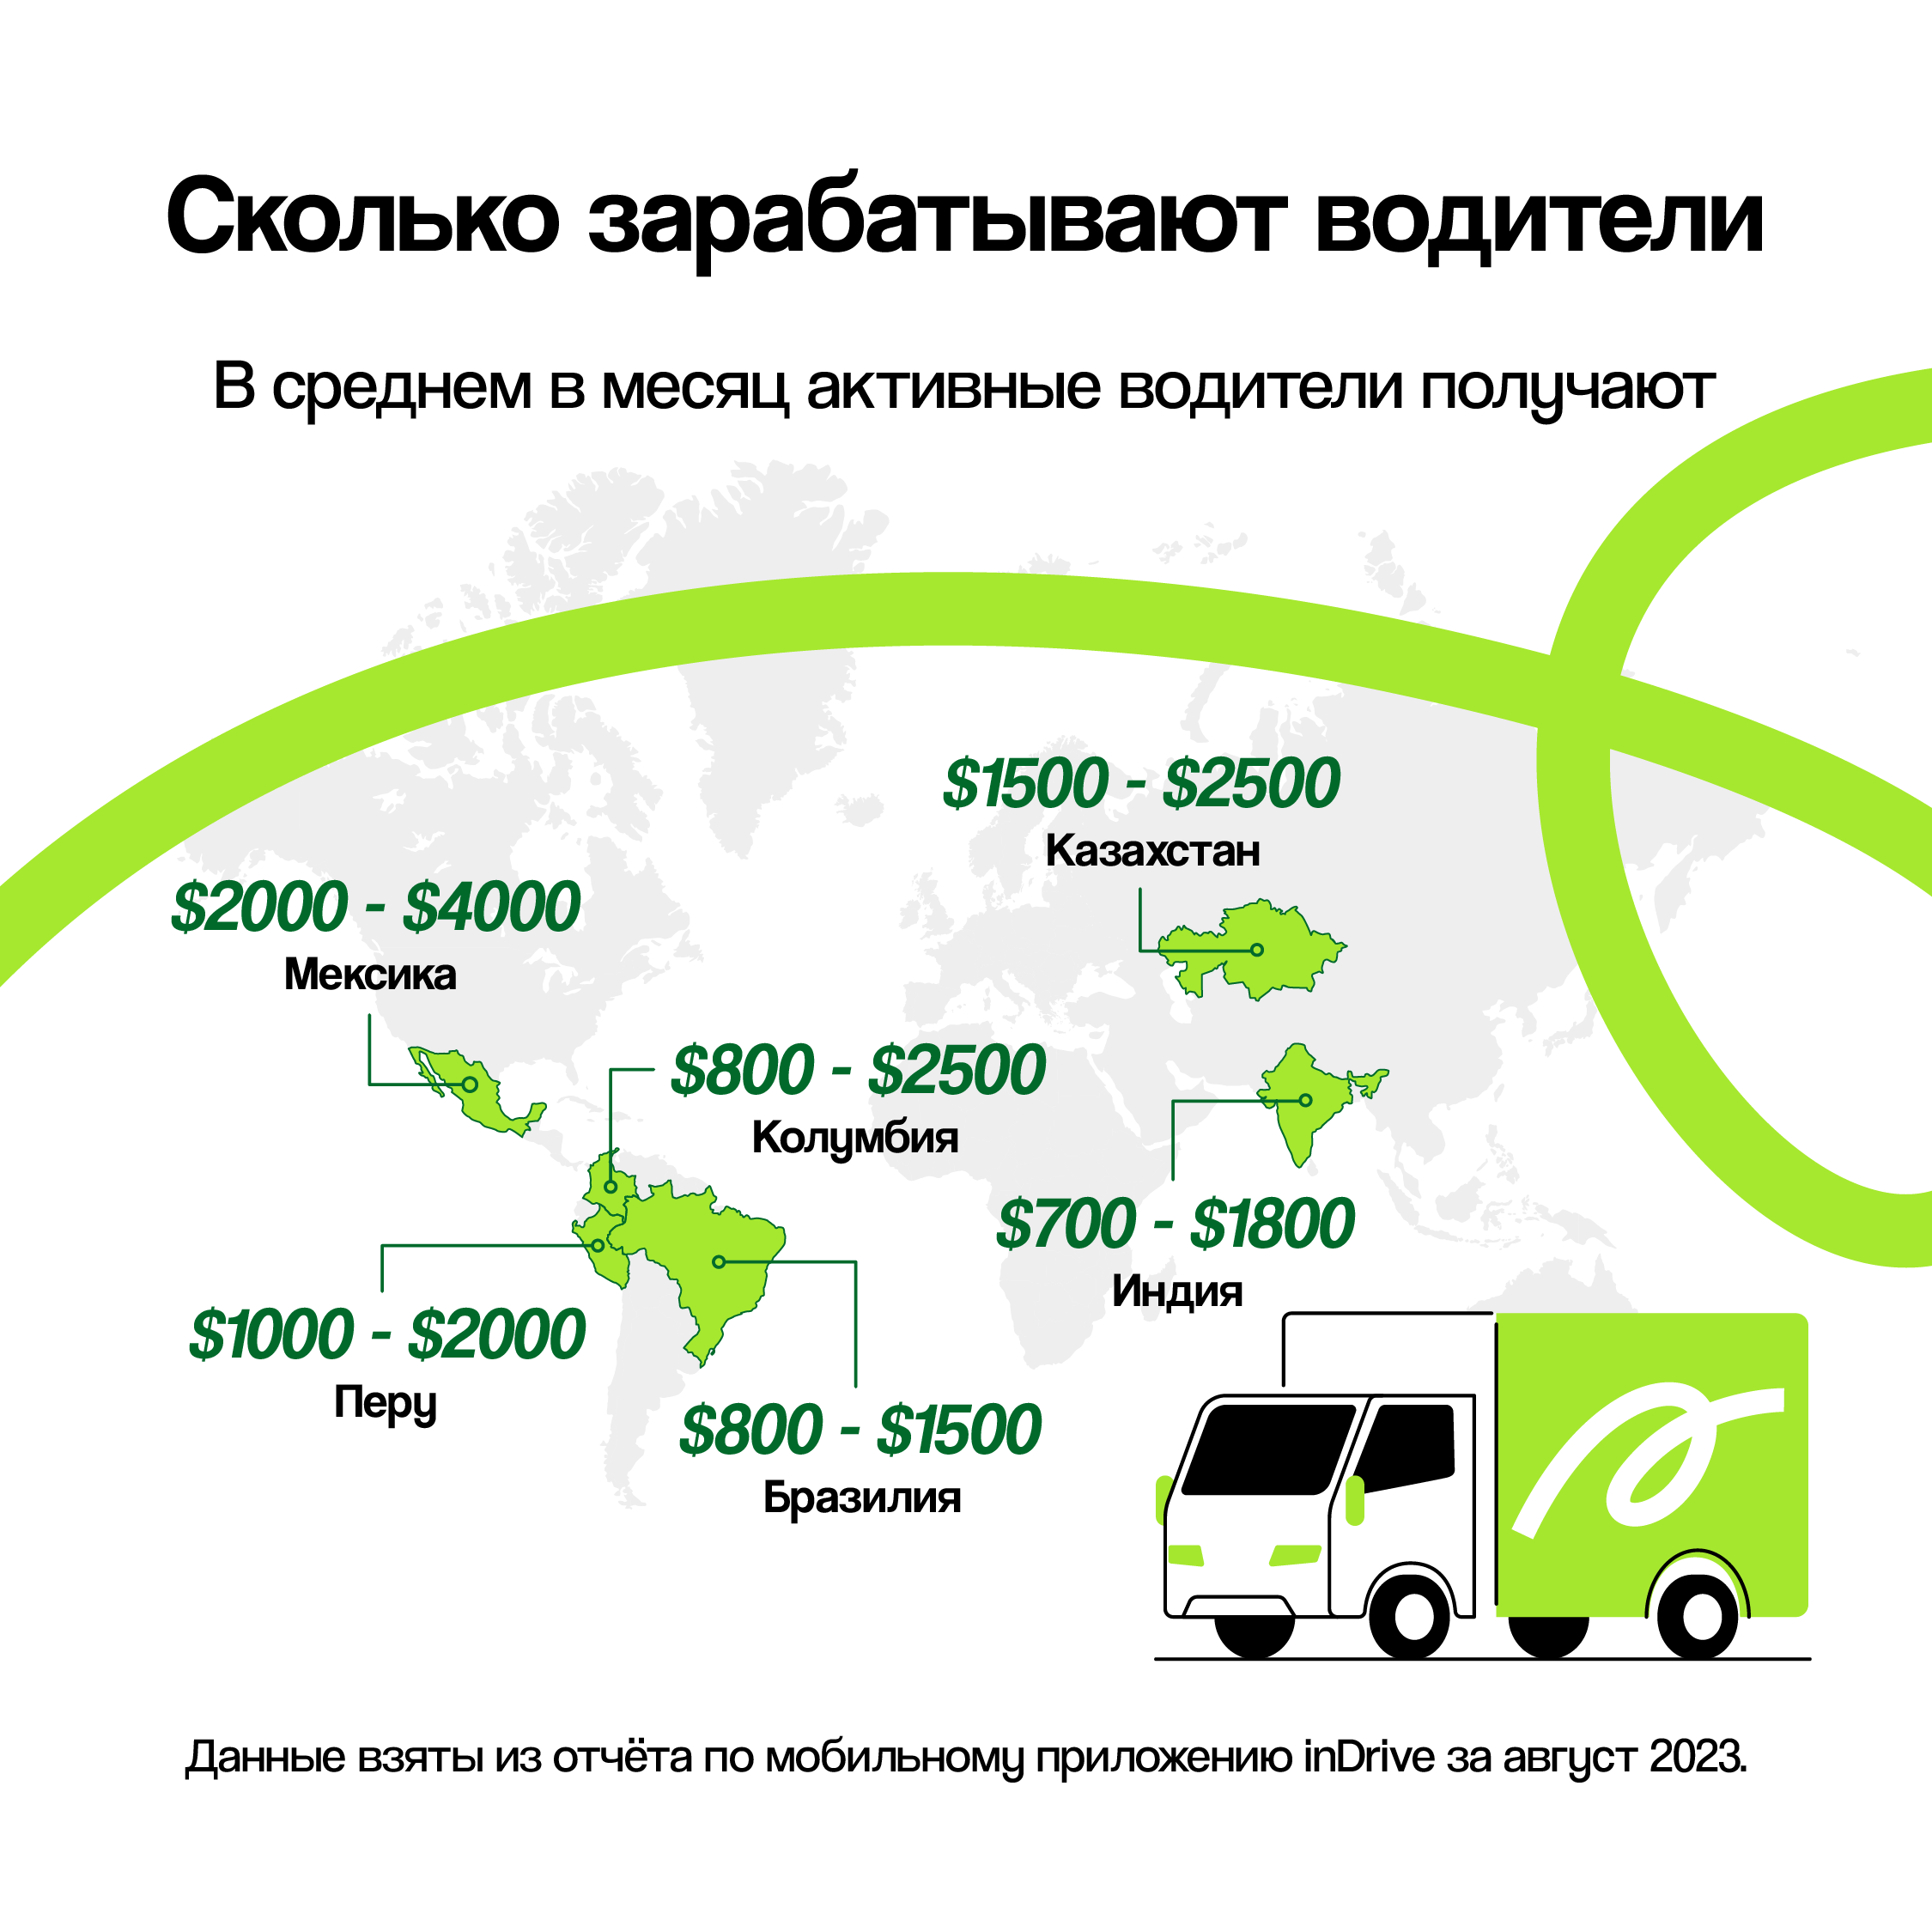 Исследование: водители грузовых автомобилей в Казахстане зарабатывают до $2500 в месяц